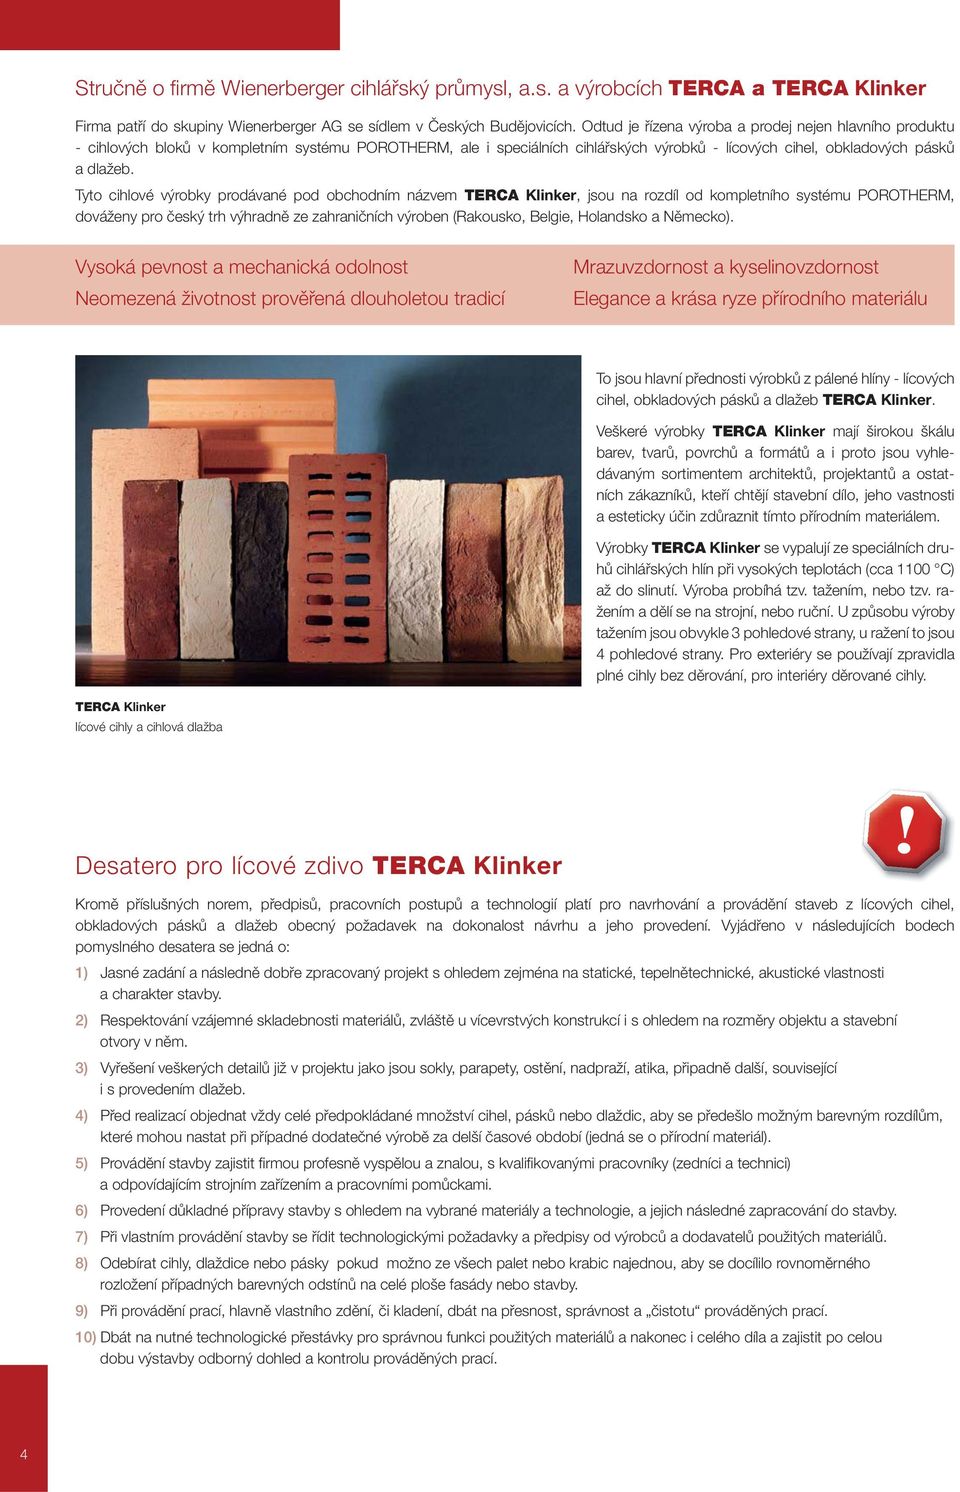 Tyto cihlové výrobky prodávané pod obchodním názvem TERCA Klinker, jsou na rozdíl od kompletního systému POROTHERM, dováženy pro český trh výhradně ze zahraničních výroben (Rakousko, Belgie,